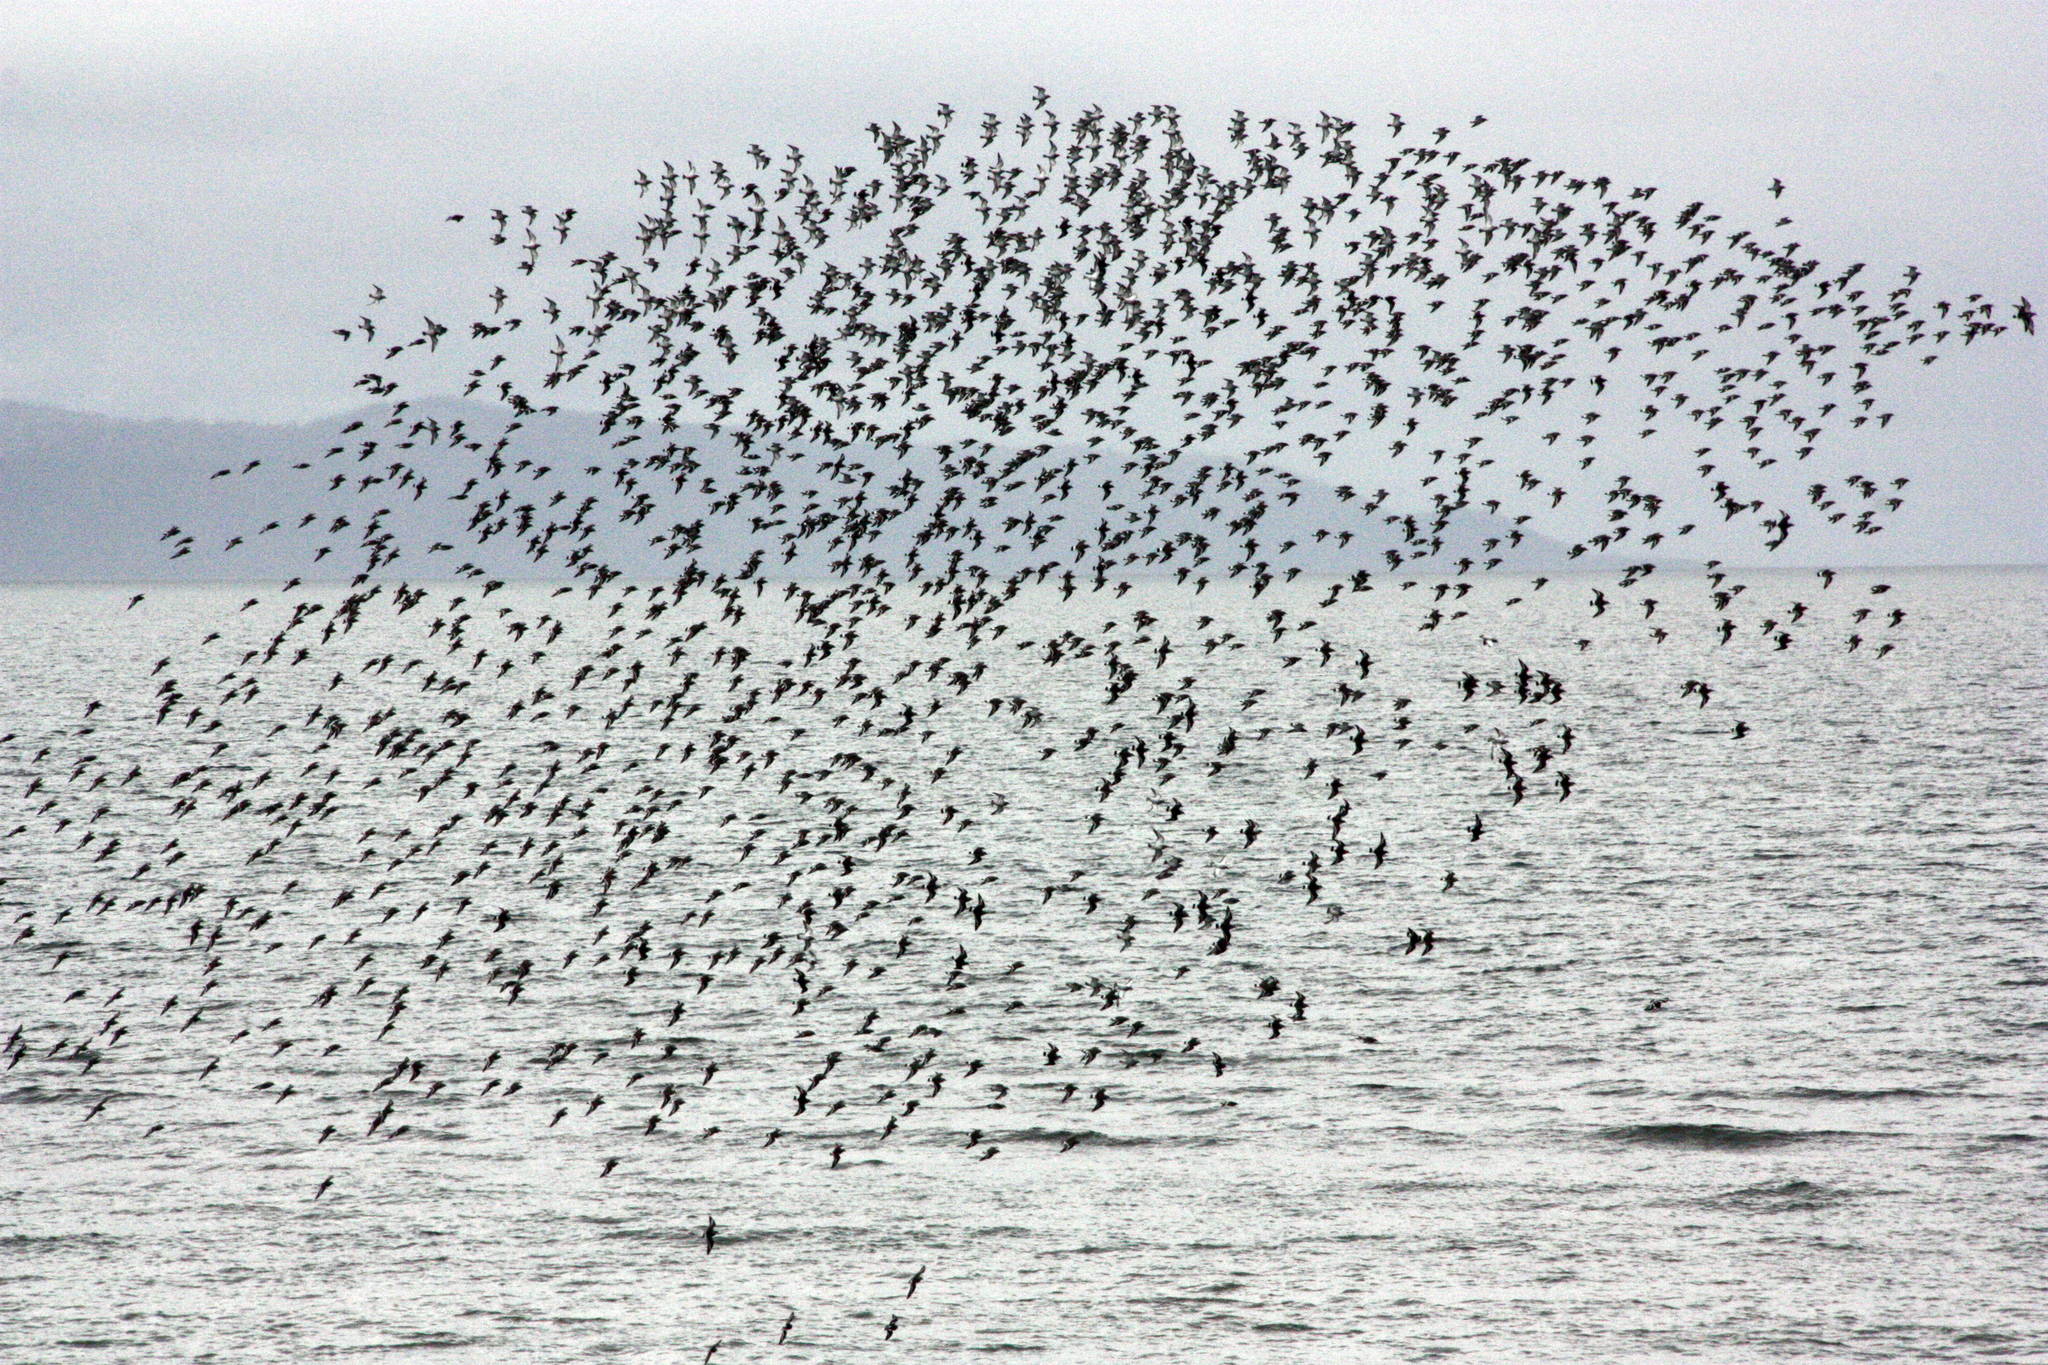 Why are shorebirds special?